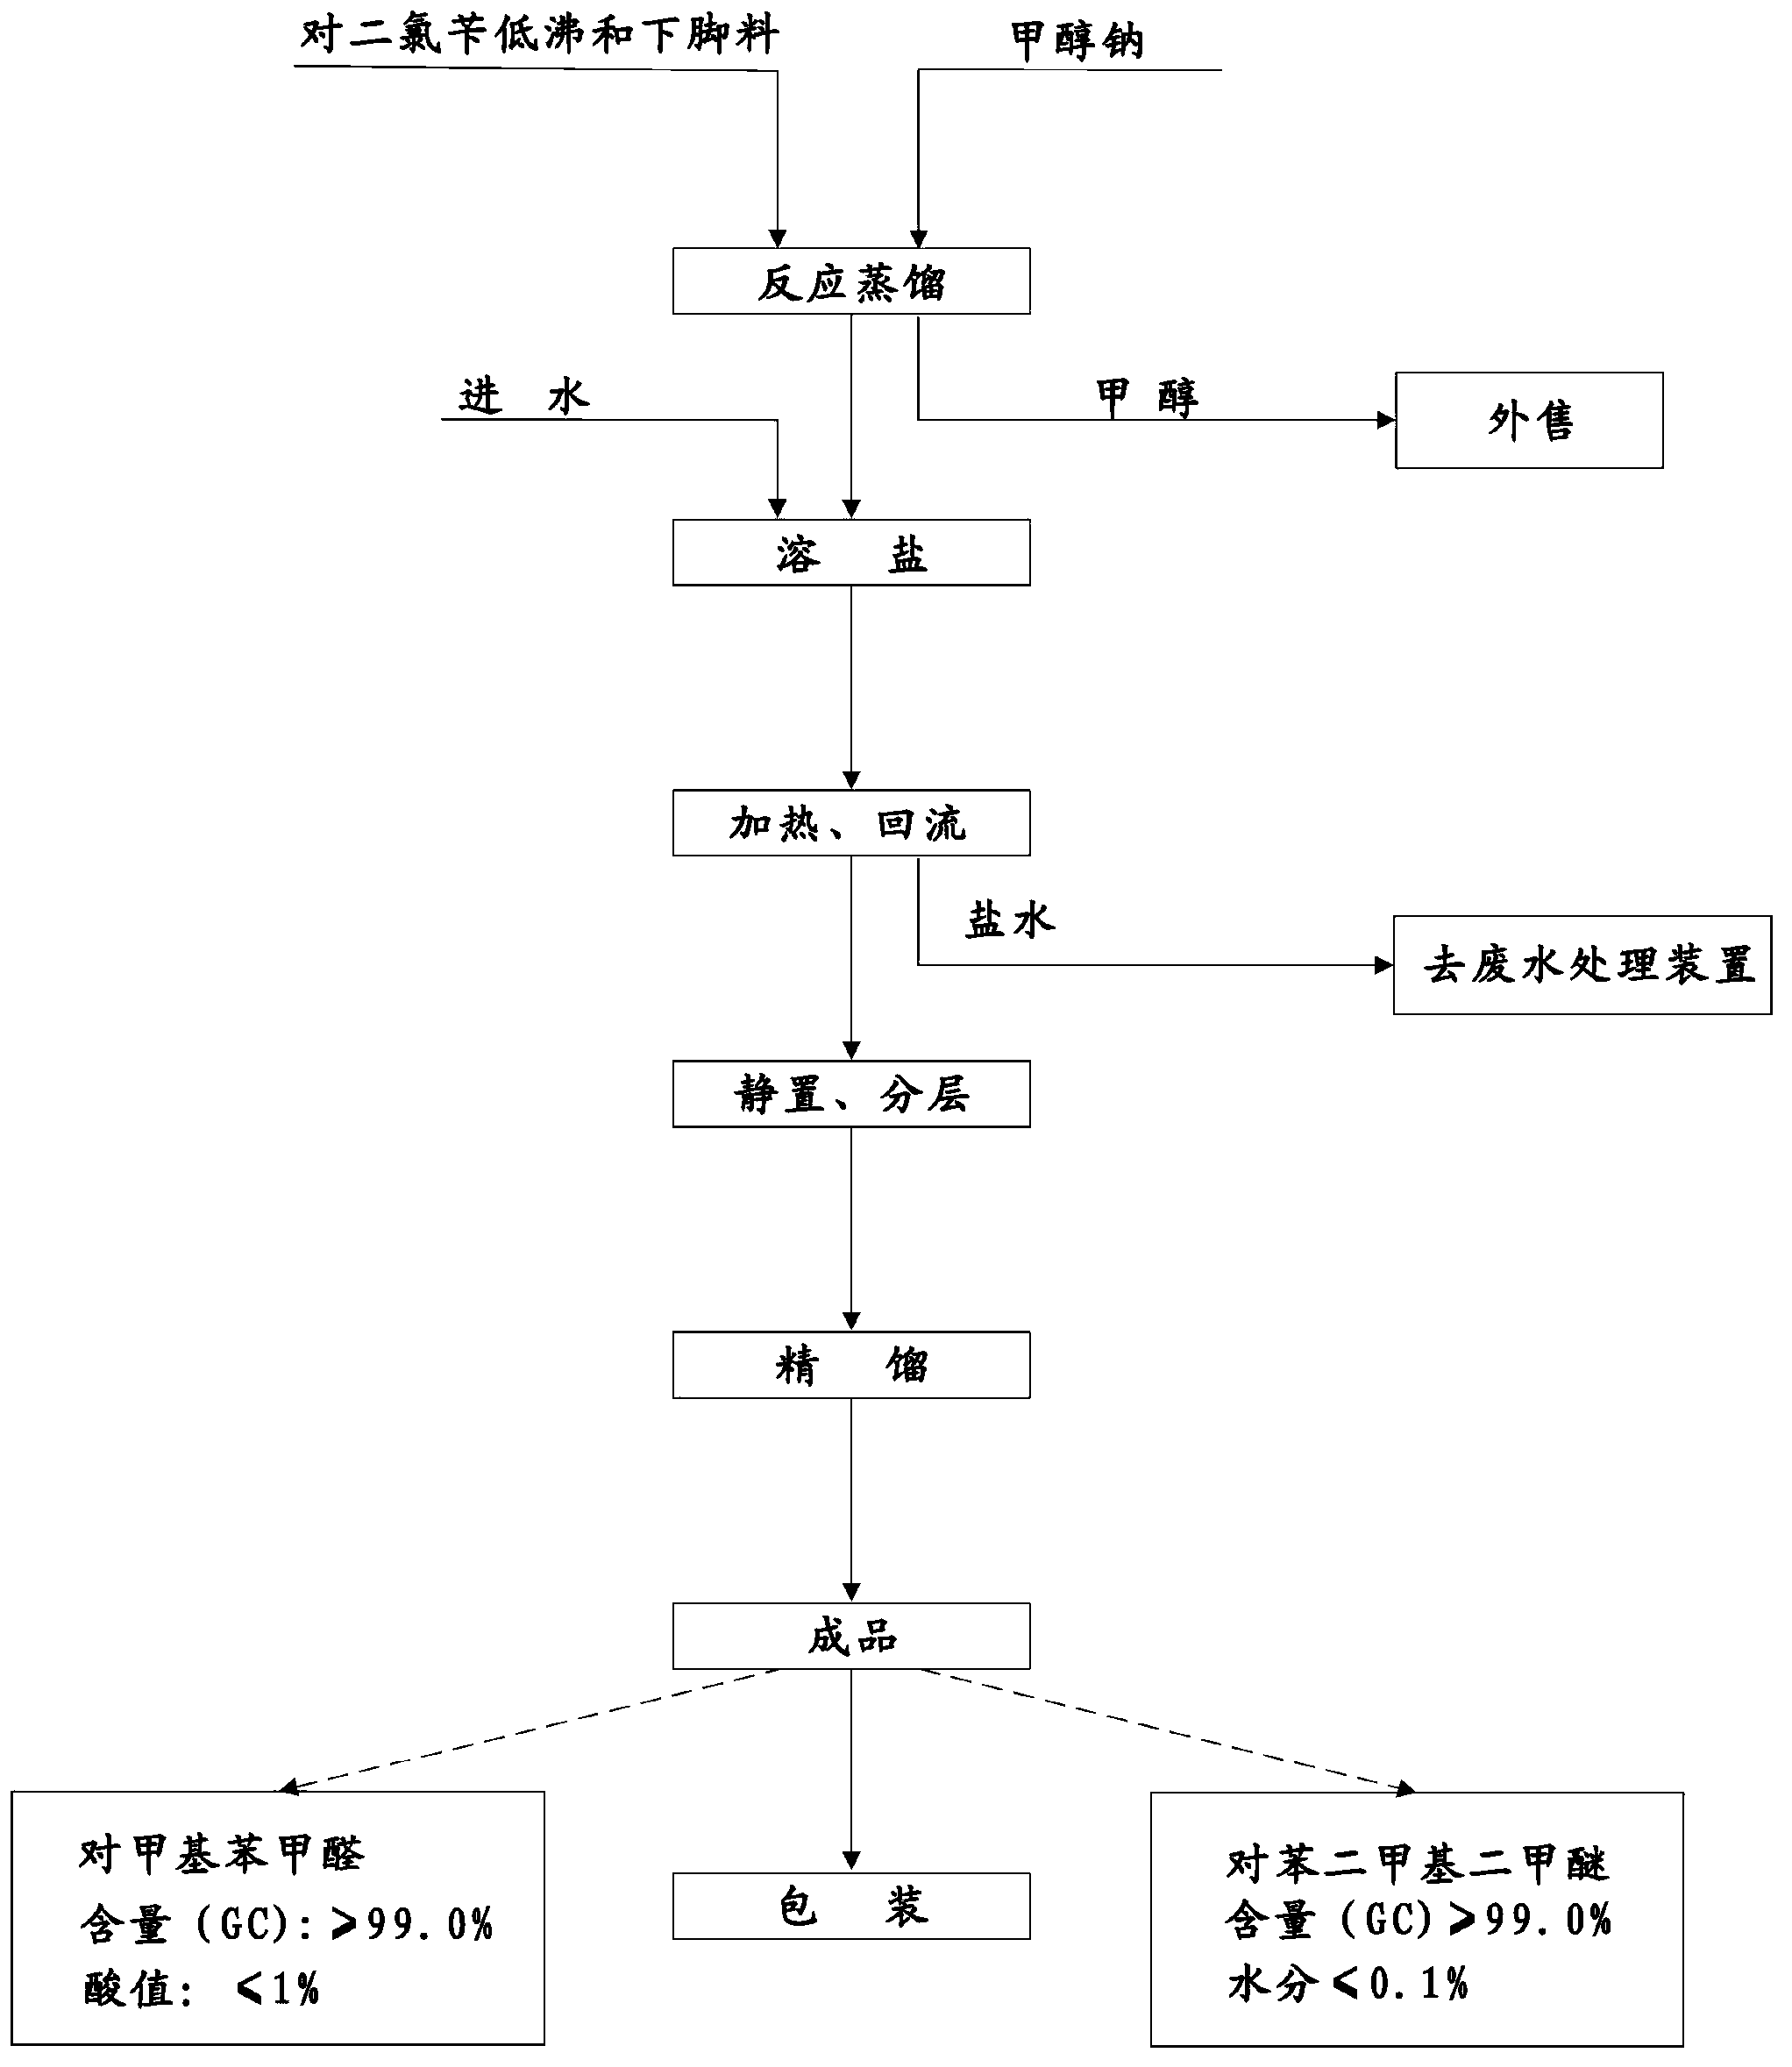 Novel process of 1,4-bis(methoxymethyl)-benzene preparation method